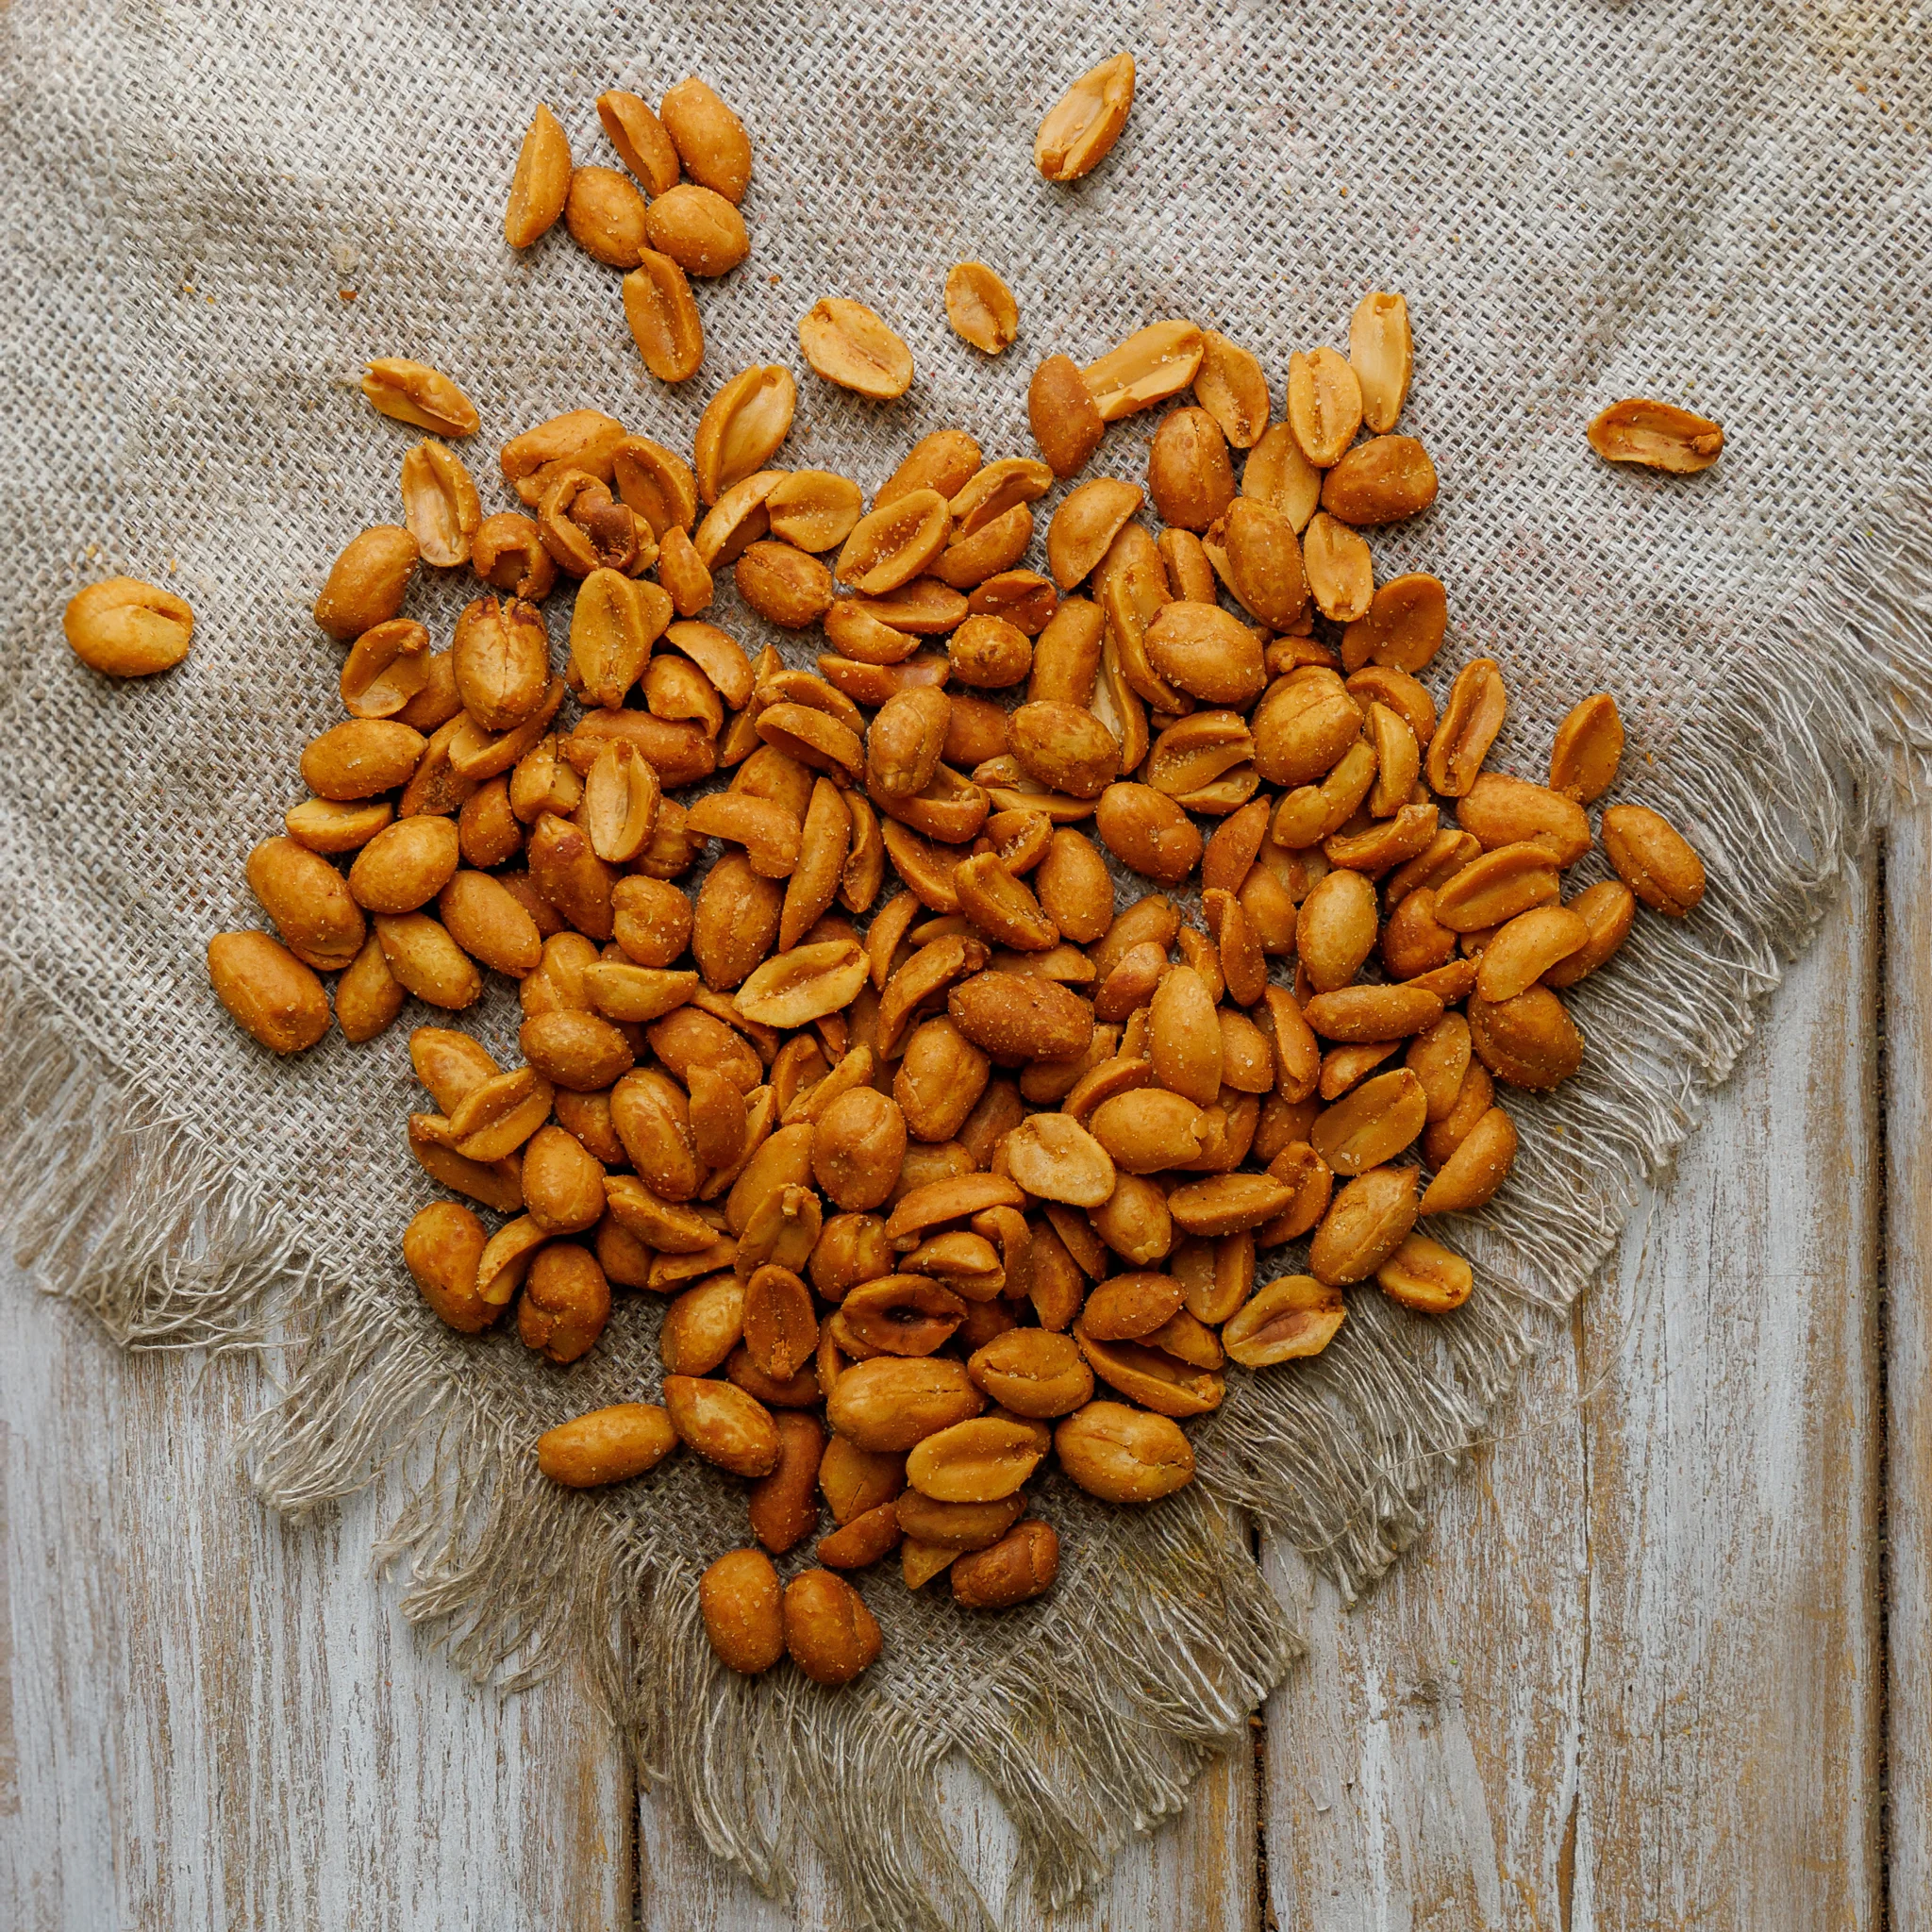 Roasted peeled Aromatic Peanuts 1000g/Snacks/Nuts